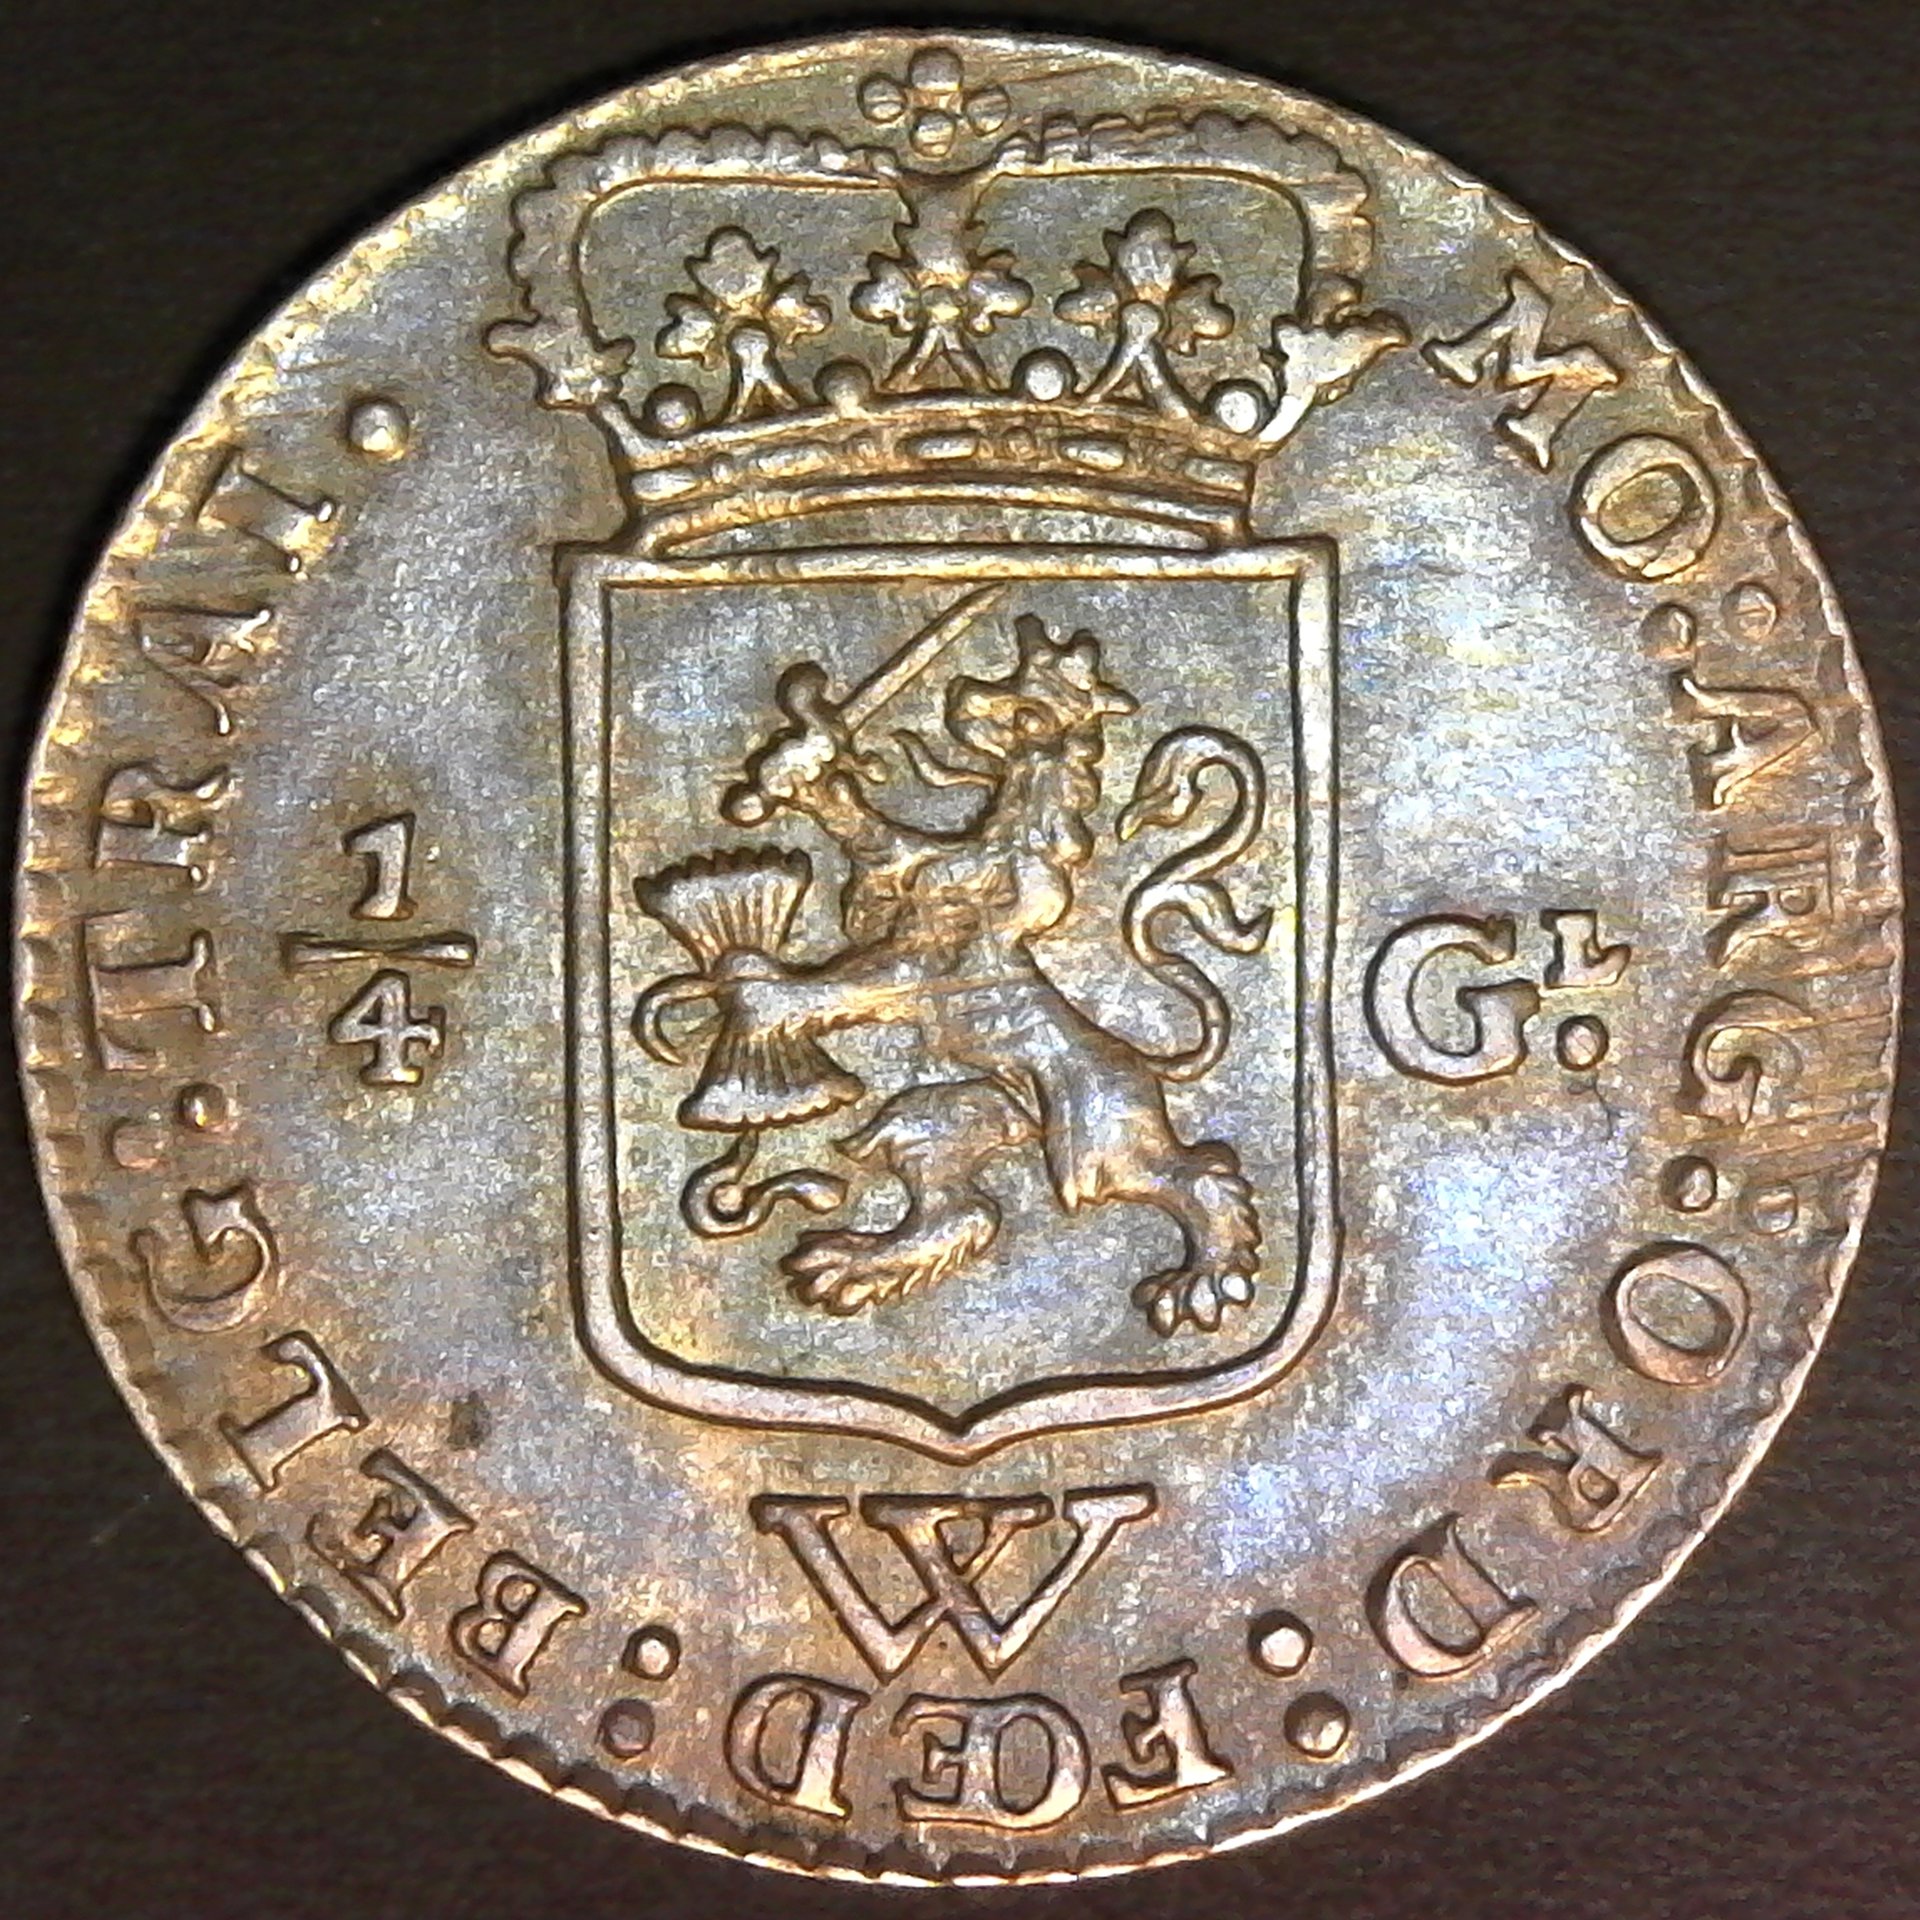 Neteherlands West Indies Quarter Gulden 1794 rev.jpg